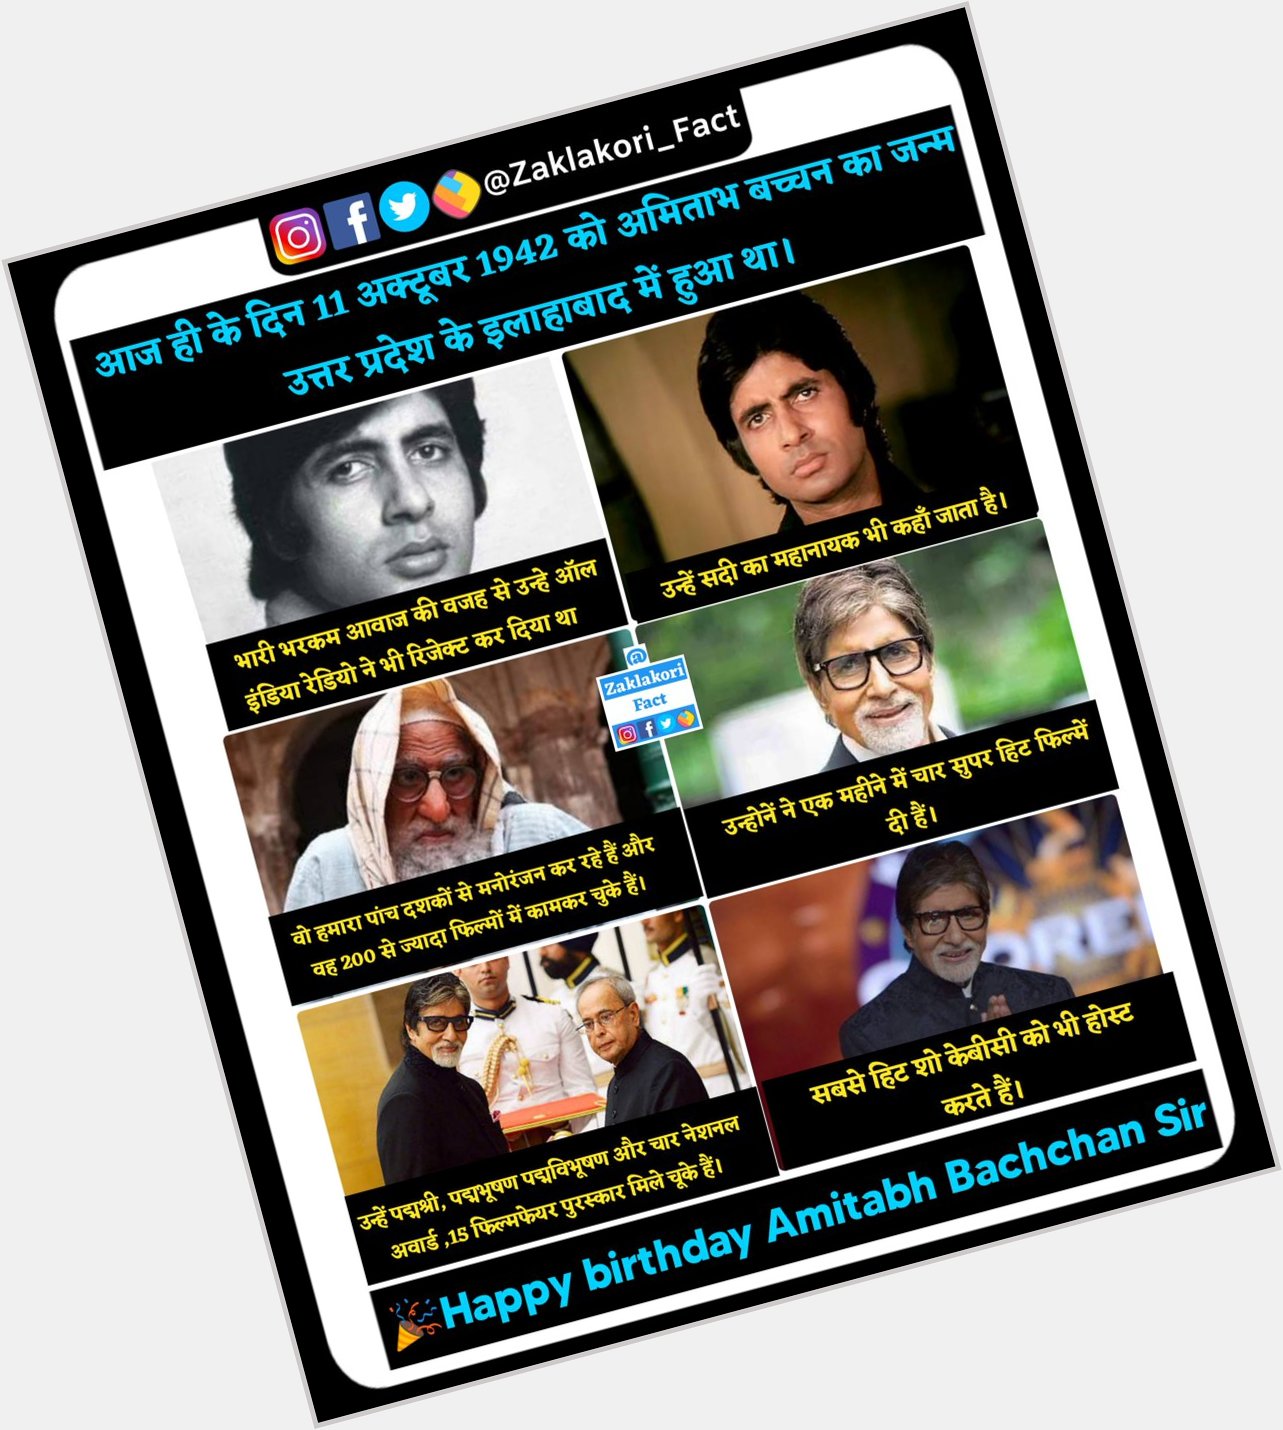  Happy birthday Amitabh Bachchan Sir
.
.
.    